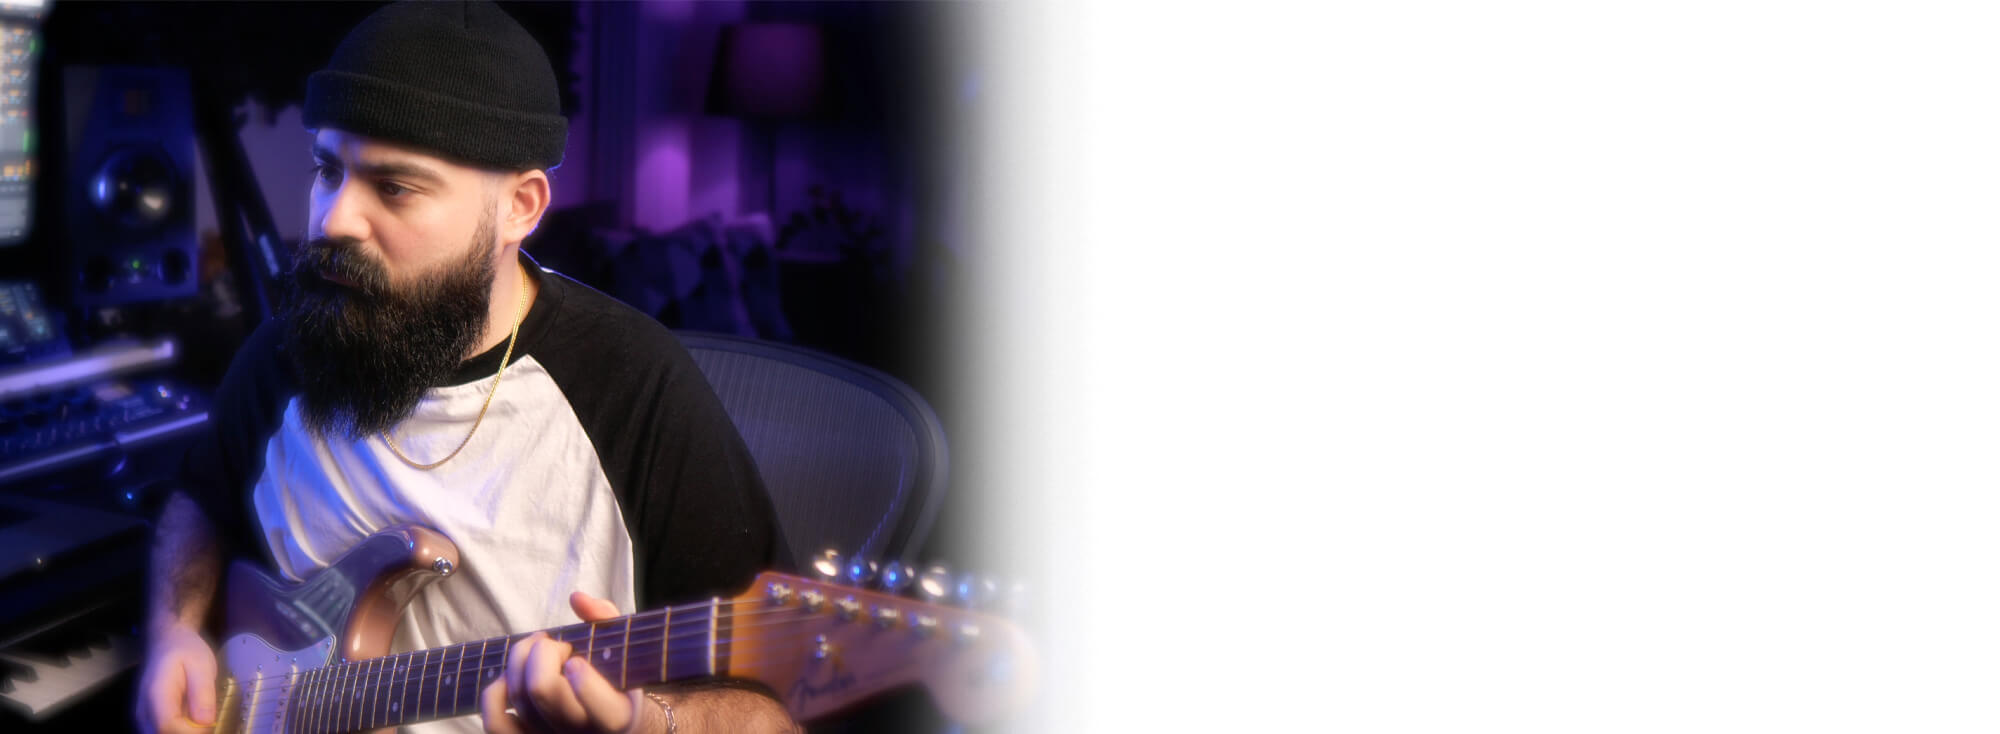 Cihan Ozaman, Künstlername Kemelion, sitzt vor seinem Equipment und spielt E-Gitarre.